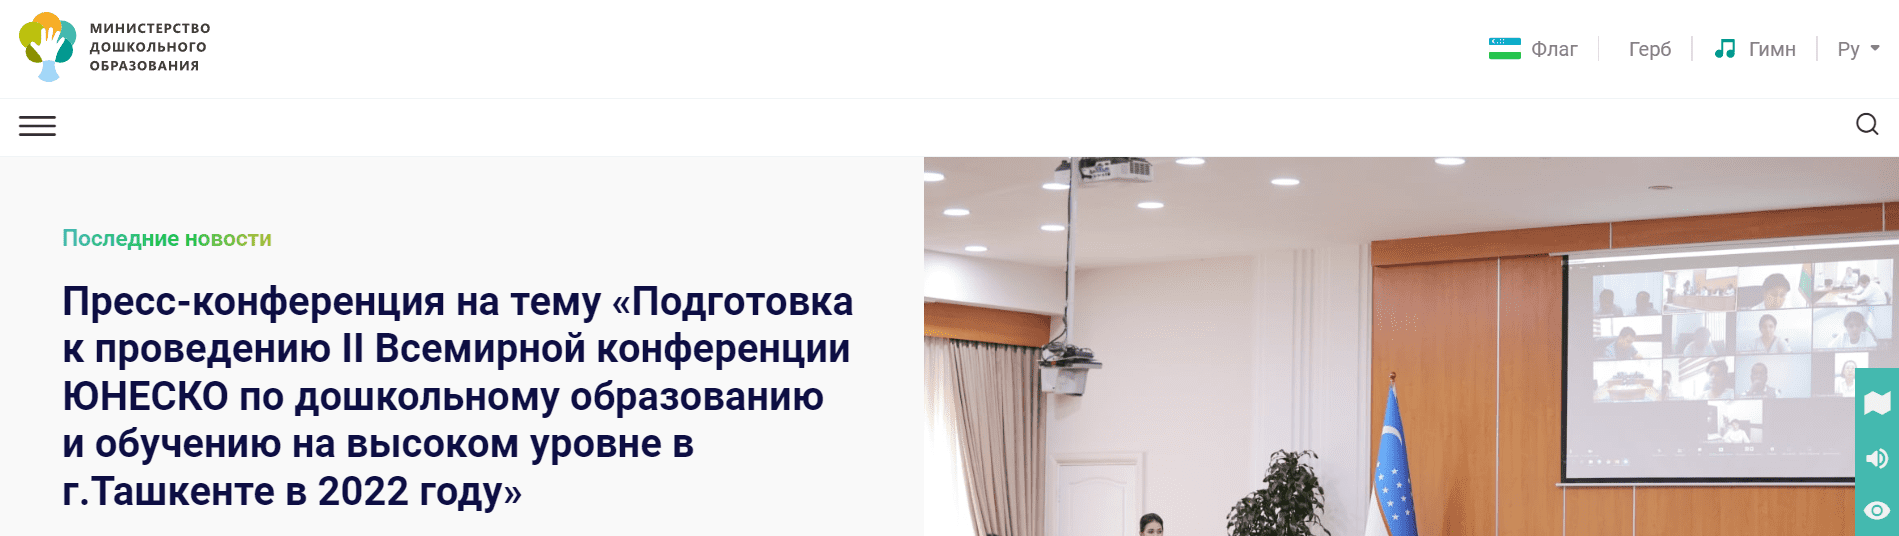 Министерство дошкольного образования (mpe.uz) – официальный сайт, поиск заявления